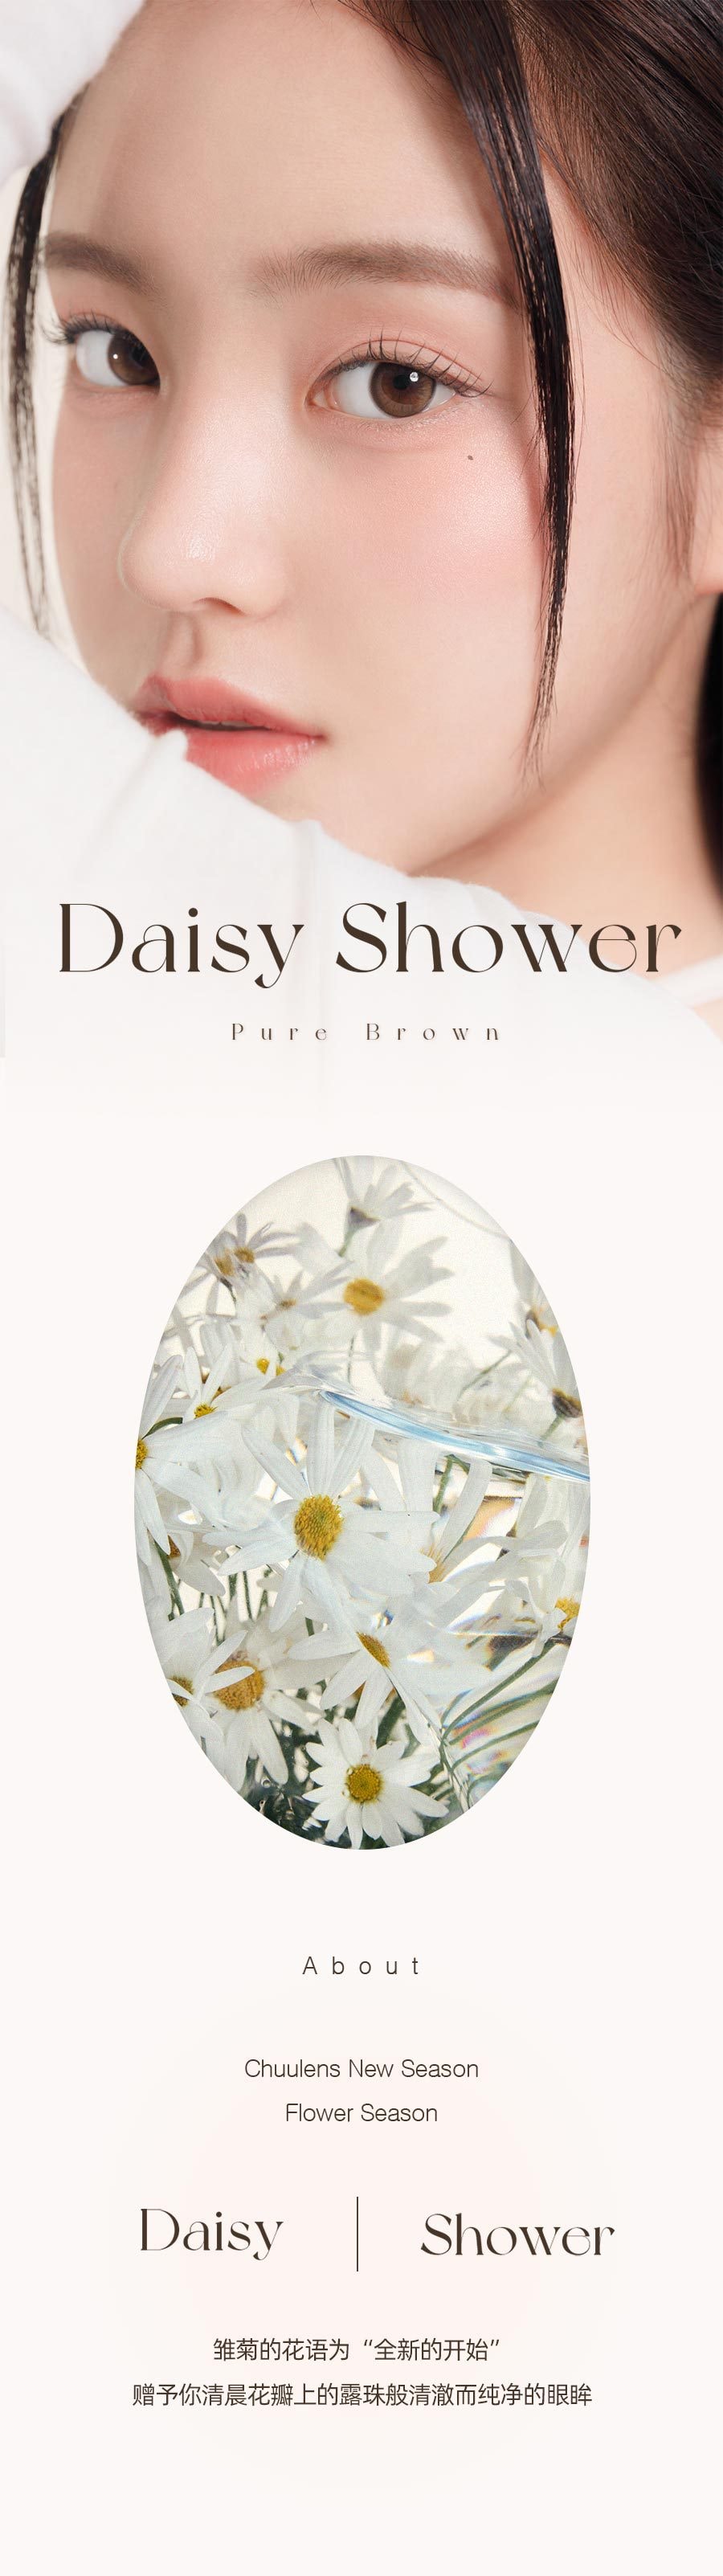 韓國 chuulens 月拋 Daisy Shower Pure Brown13.3mm 2片裝 0度